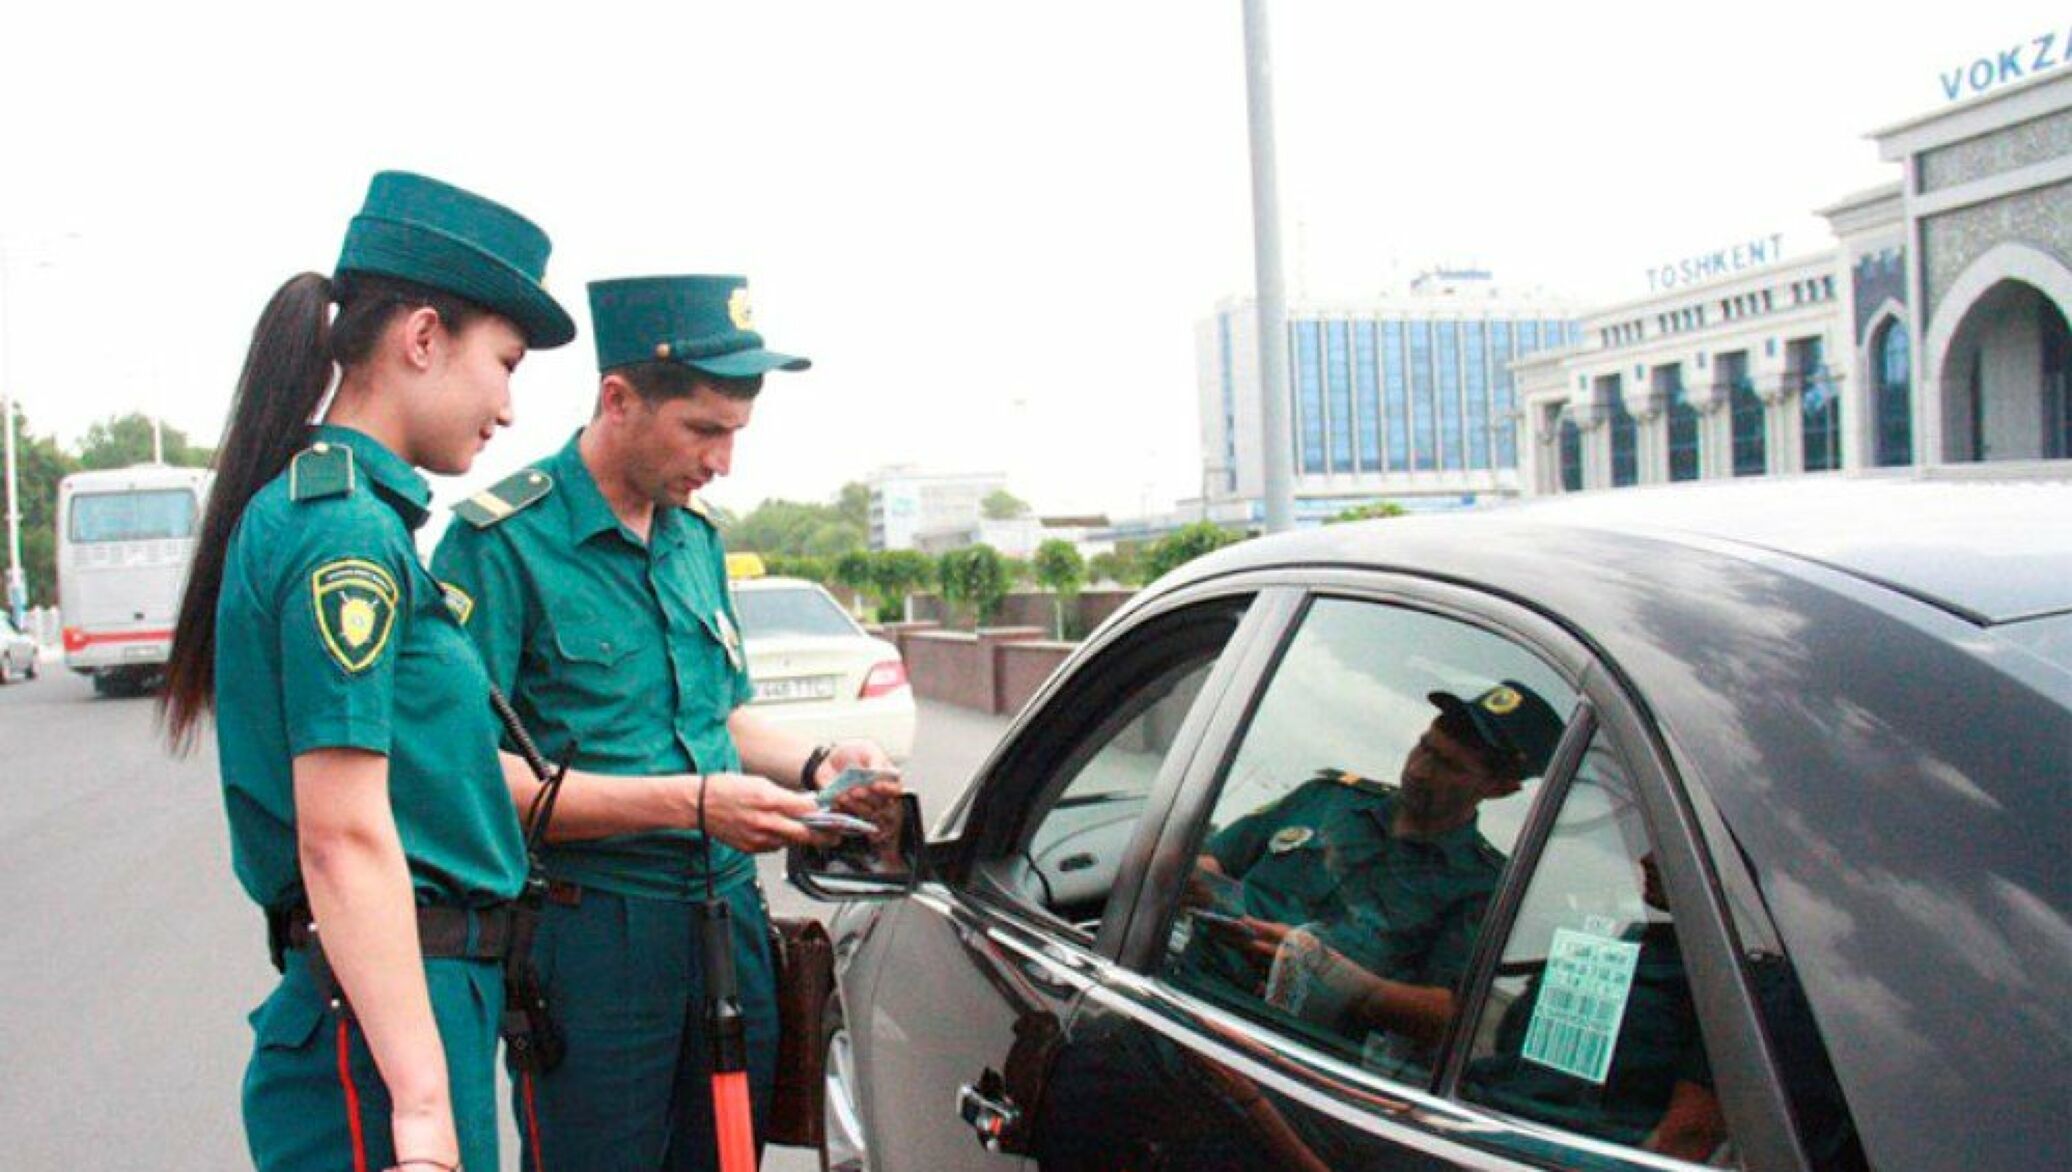 В Ташкенте пьяный мужчина устроил скандал на улице во время патрульной службы